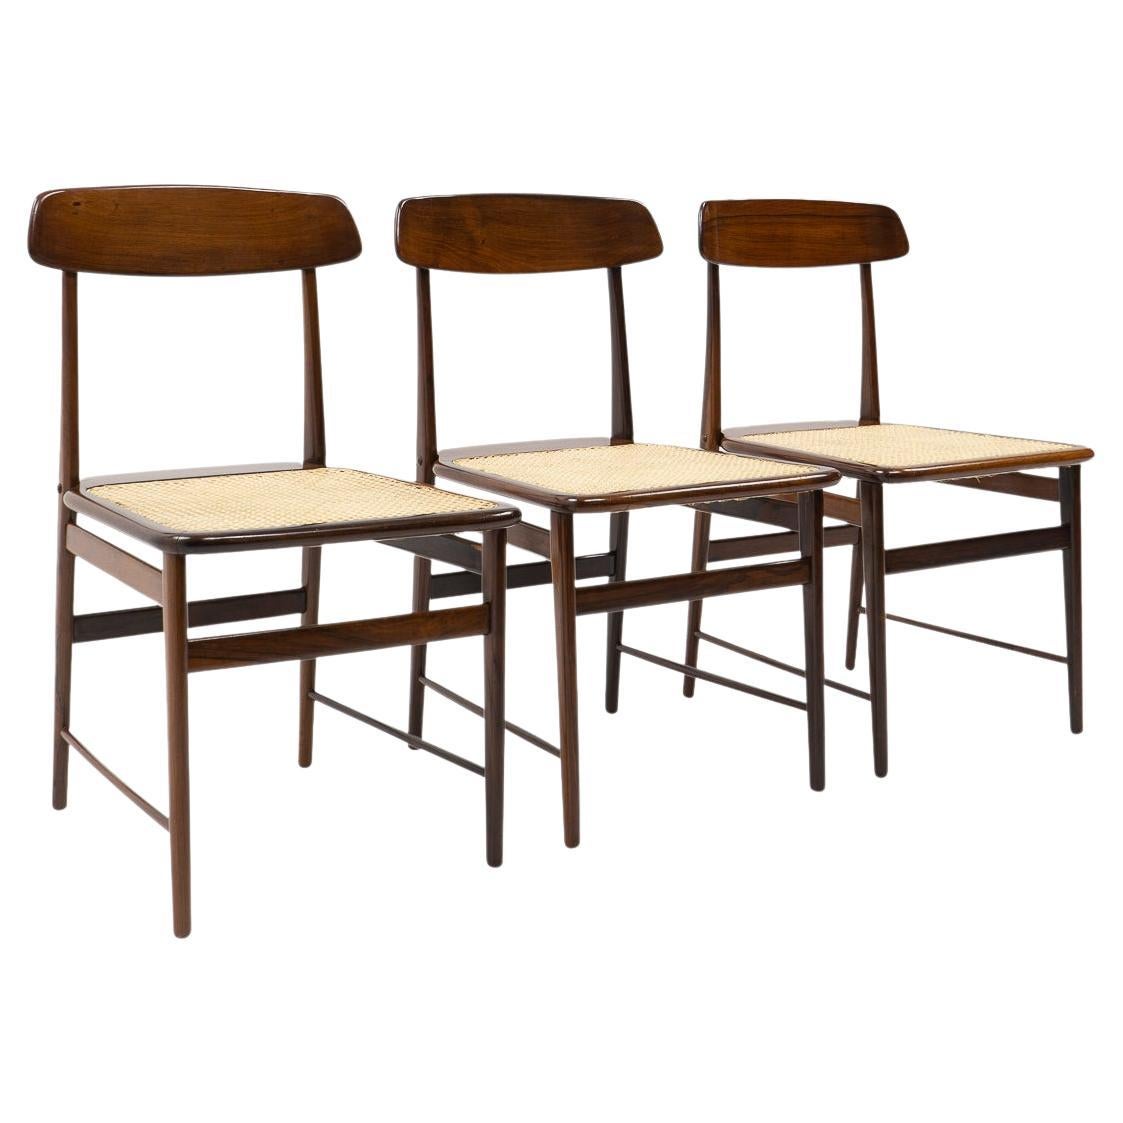 Original Design Sergio Rodrigues, Lucio Chairs for OCA Brazil, 1950s For Sale